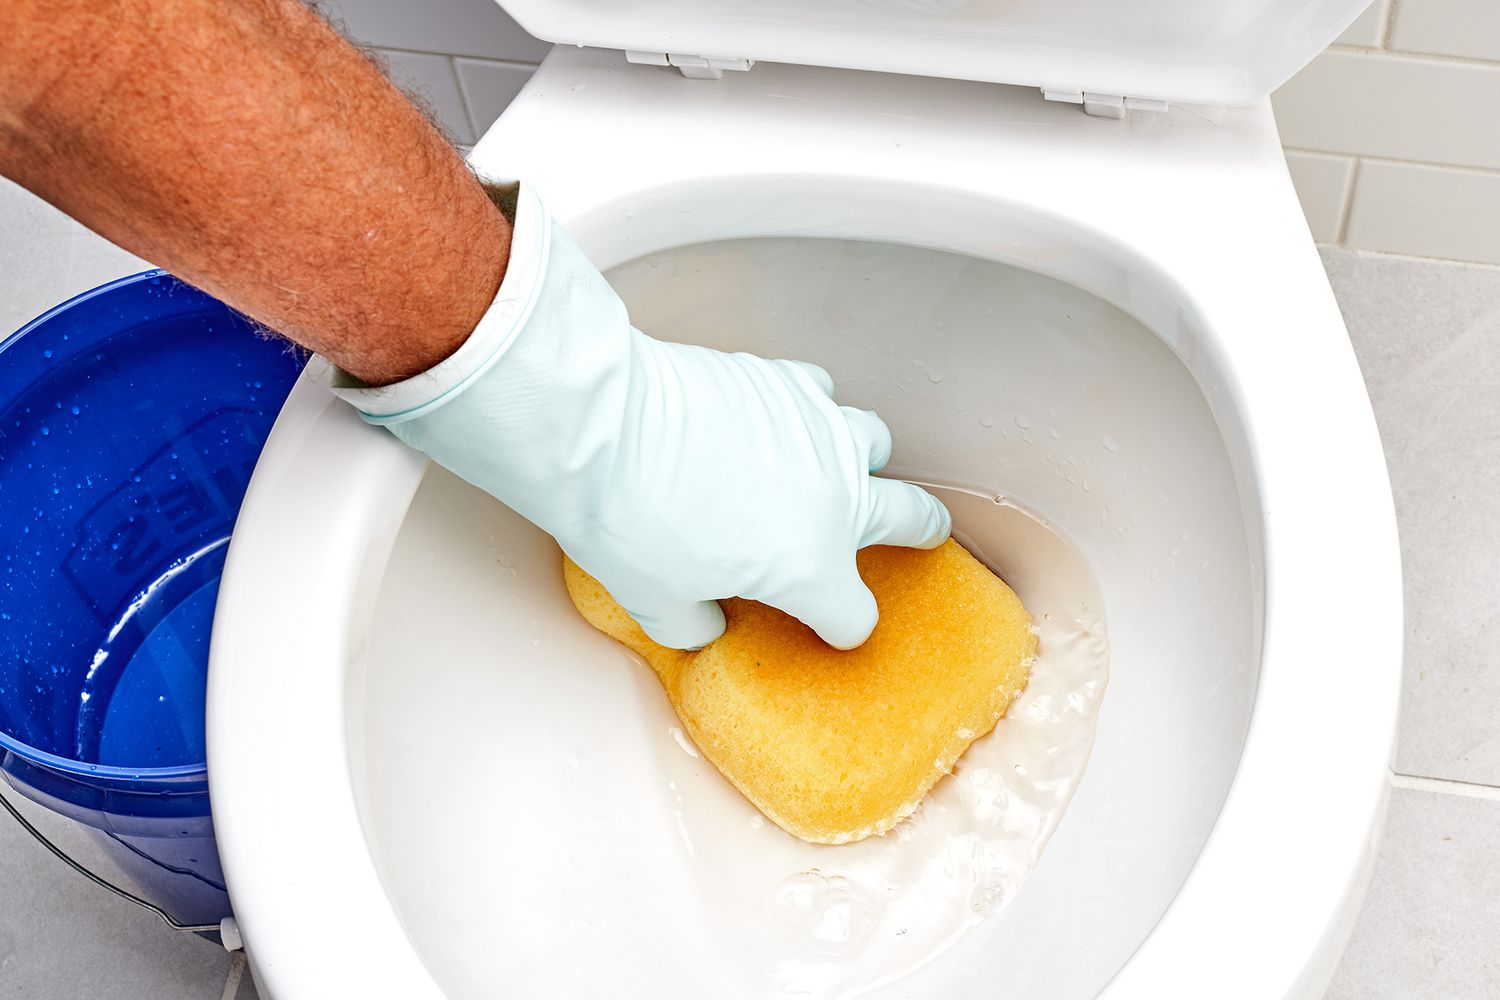 Toilette wird mit gelbem Schwamm entleert, der das Wasser aufsaugt